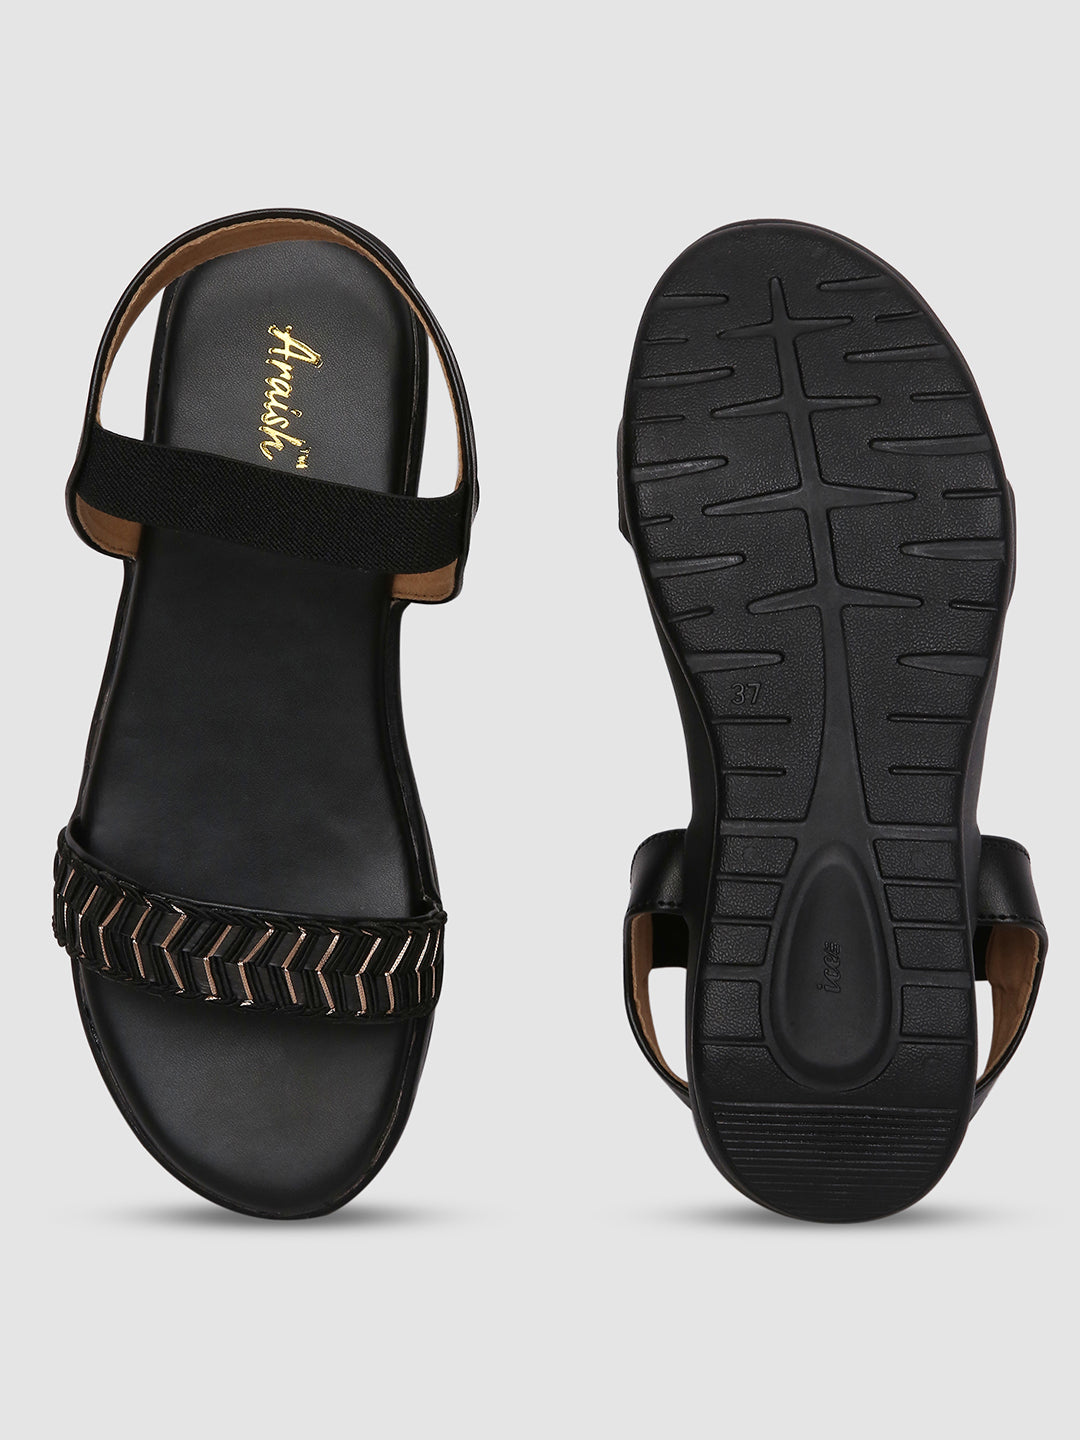 Black Weaved Platform Heels